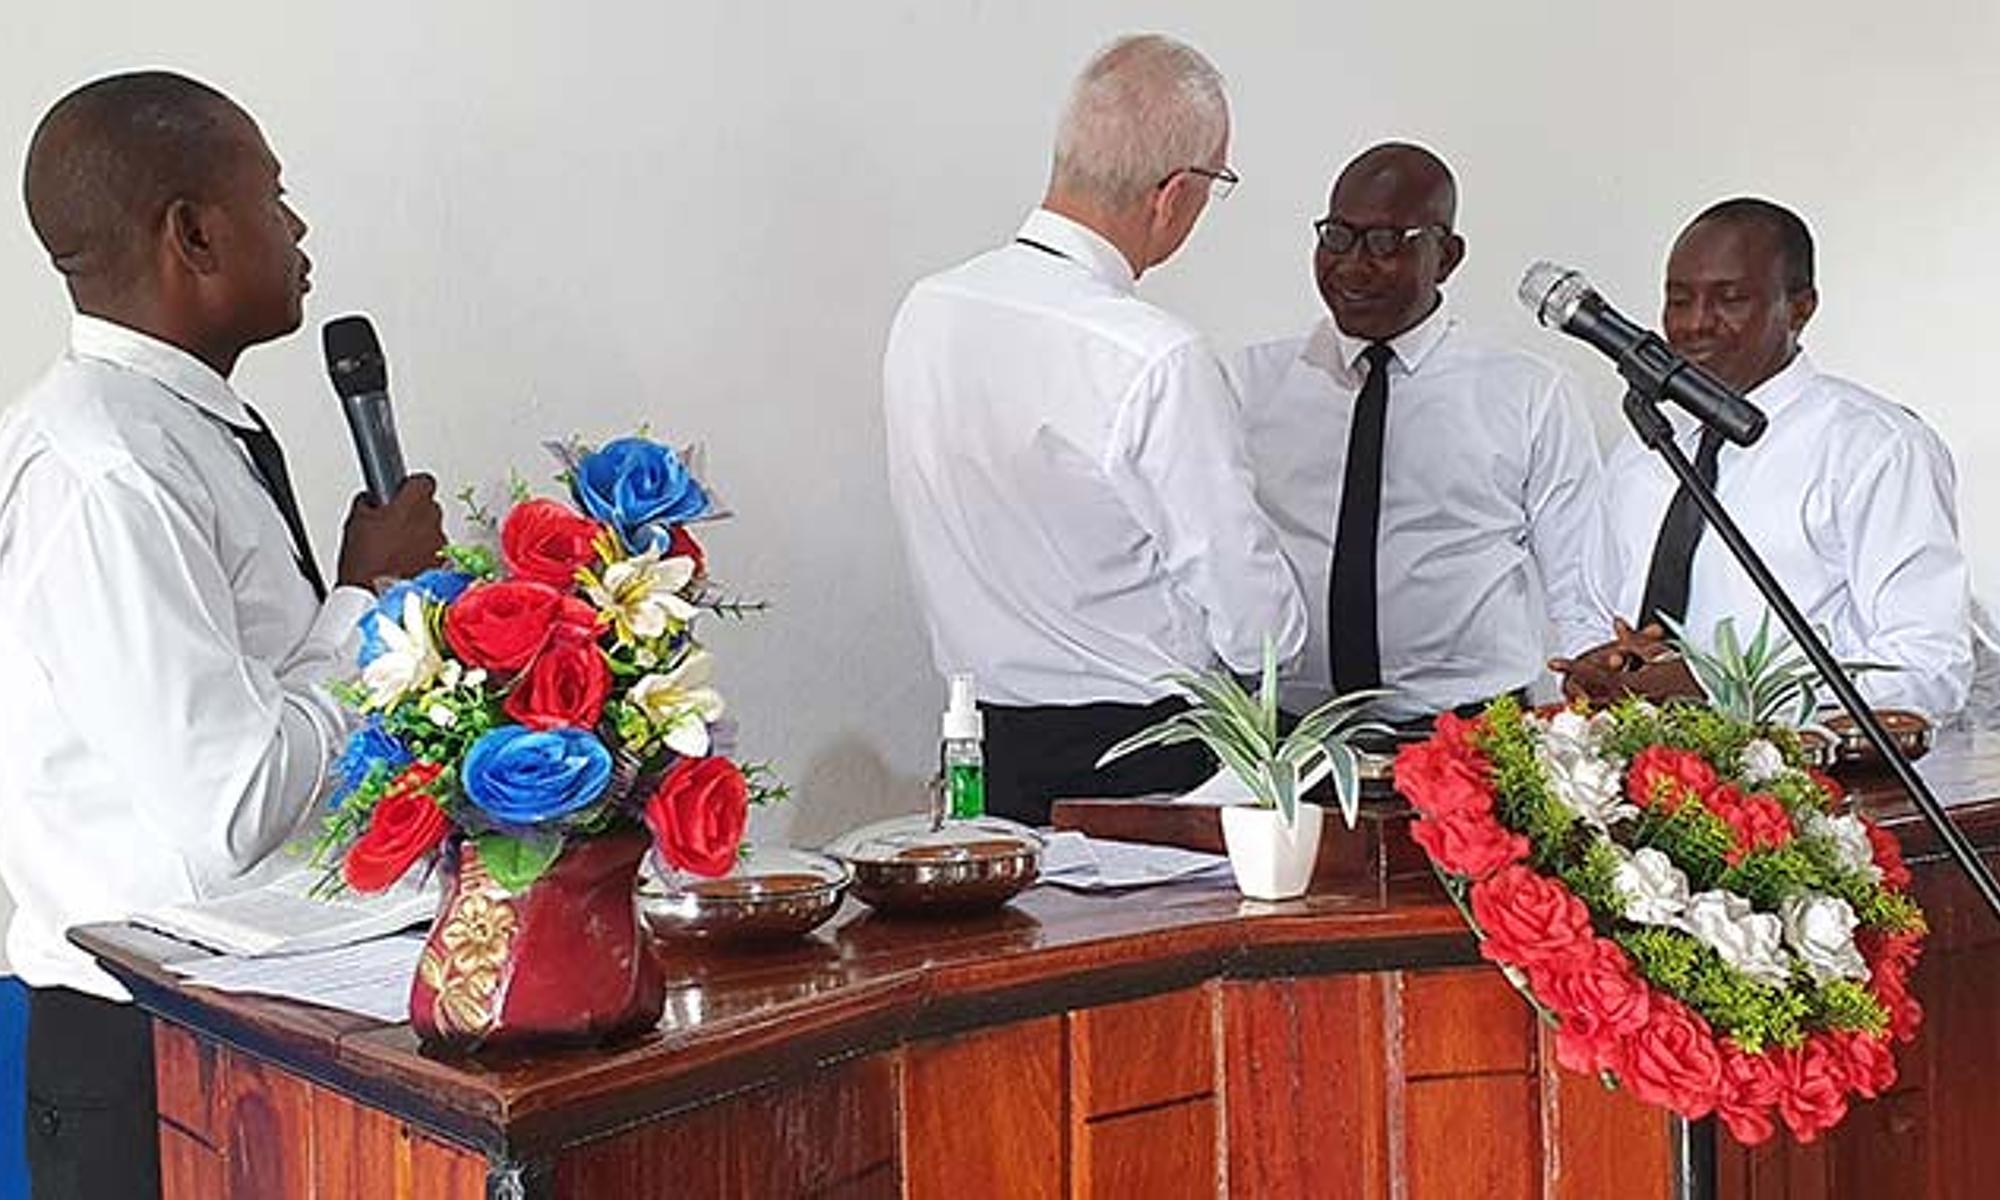 Der Bezirksapostel ordinierte die beiden Evangelisten Abu Tamba Bangura 
und Bob Freeman Saidu zu Aposteln für Sierra Leone